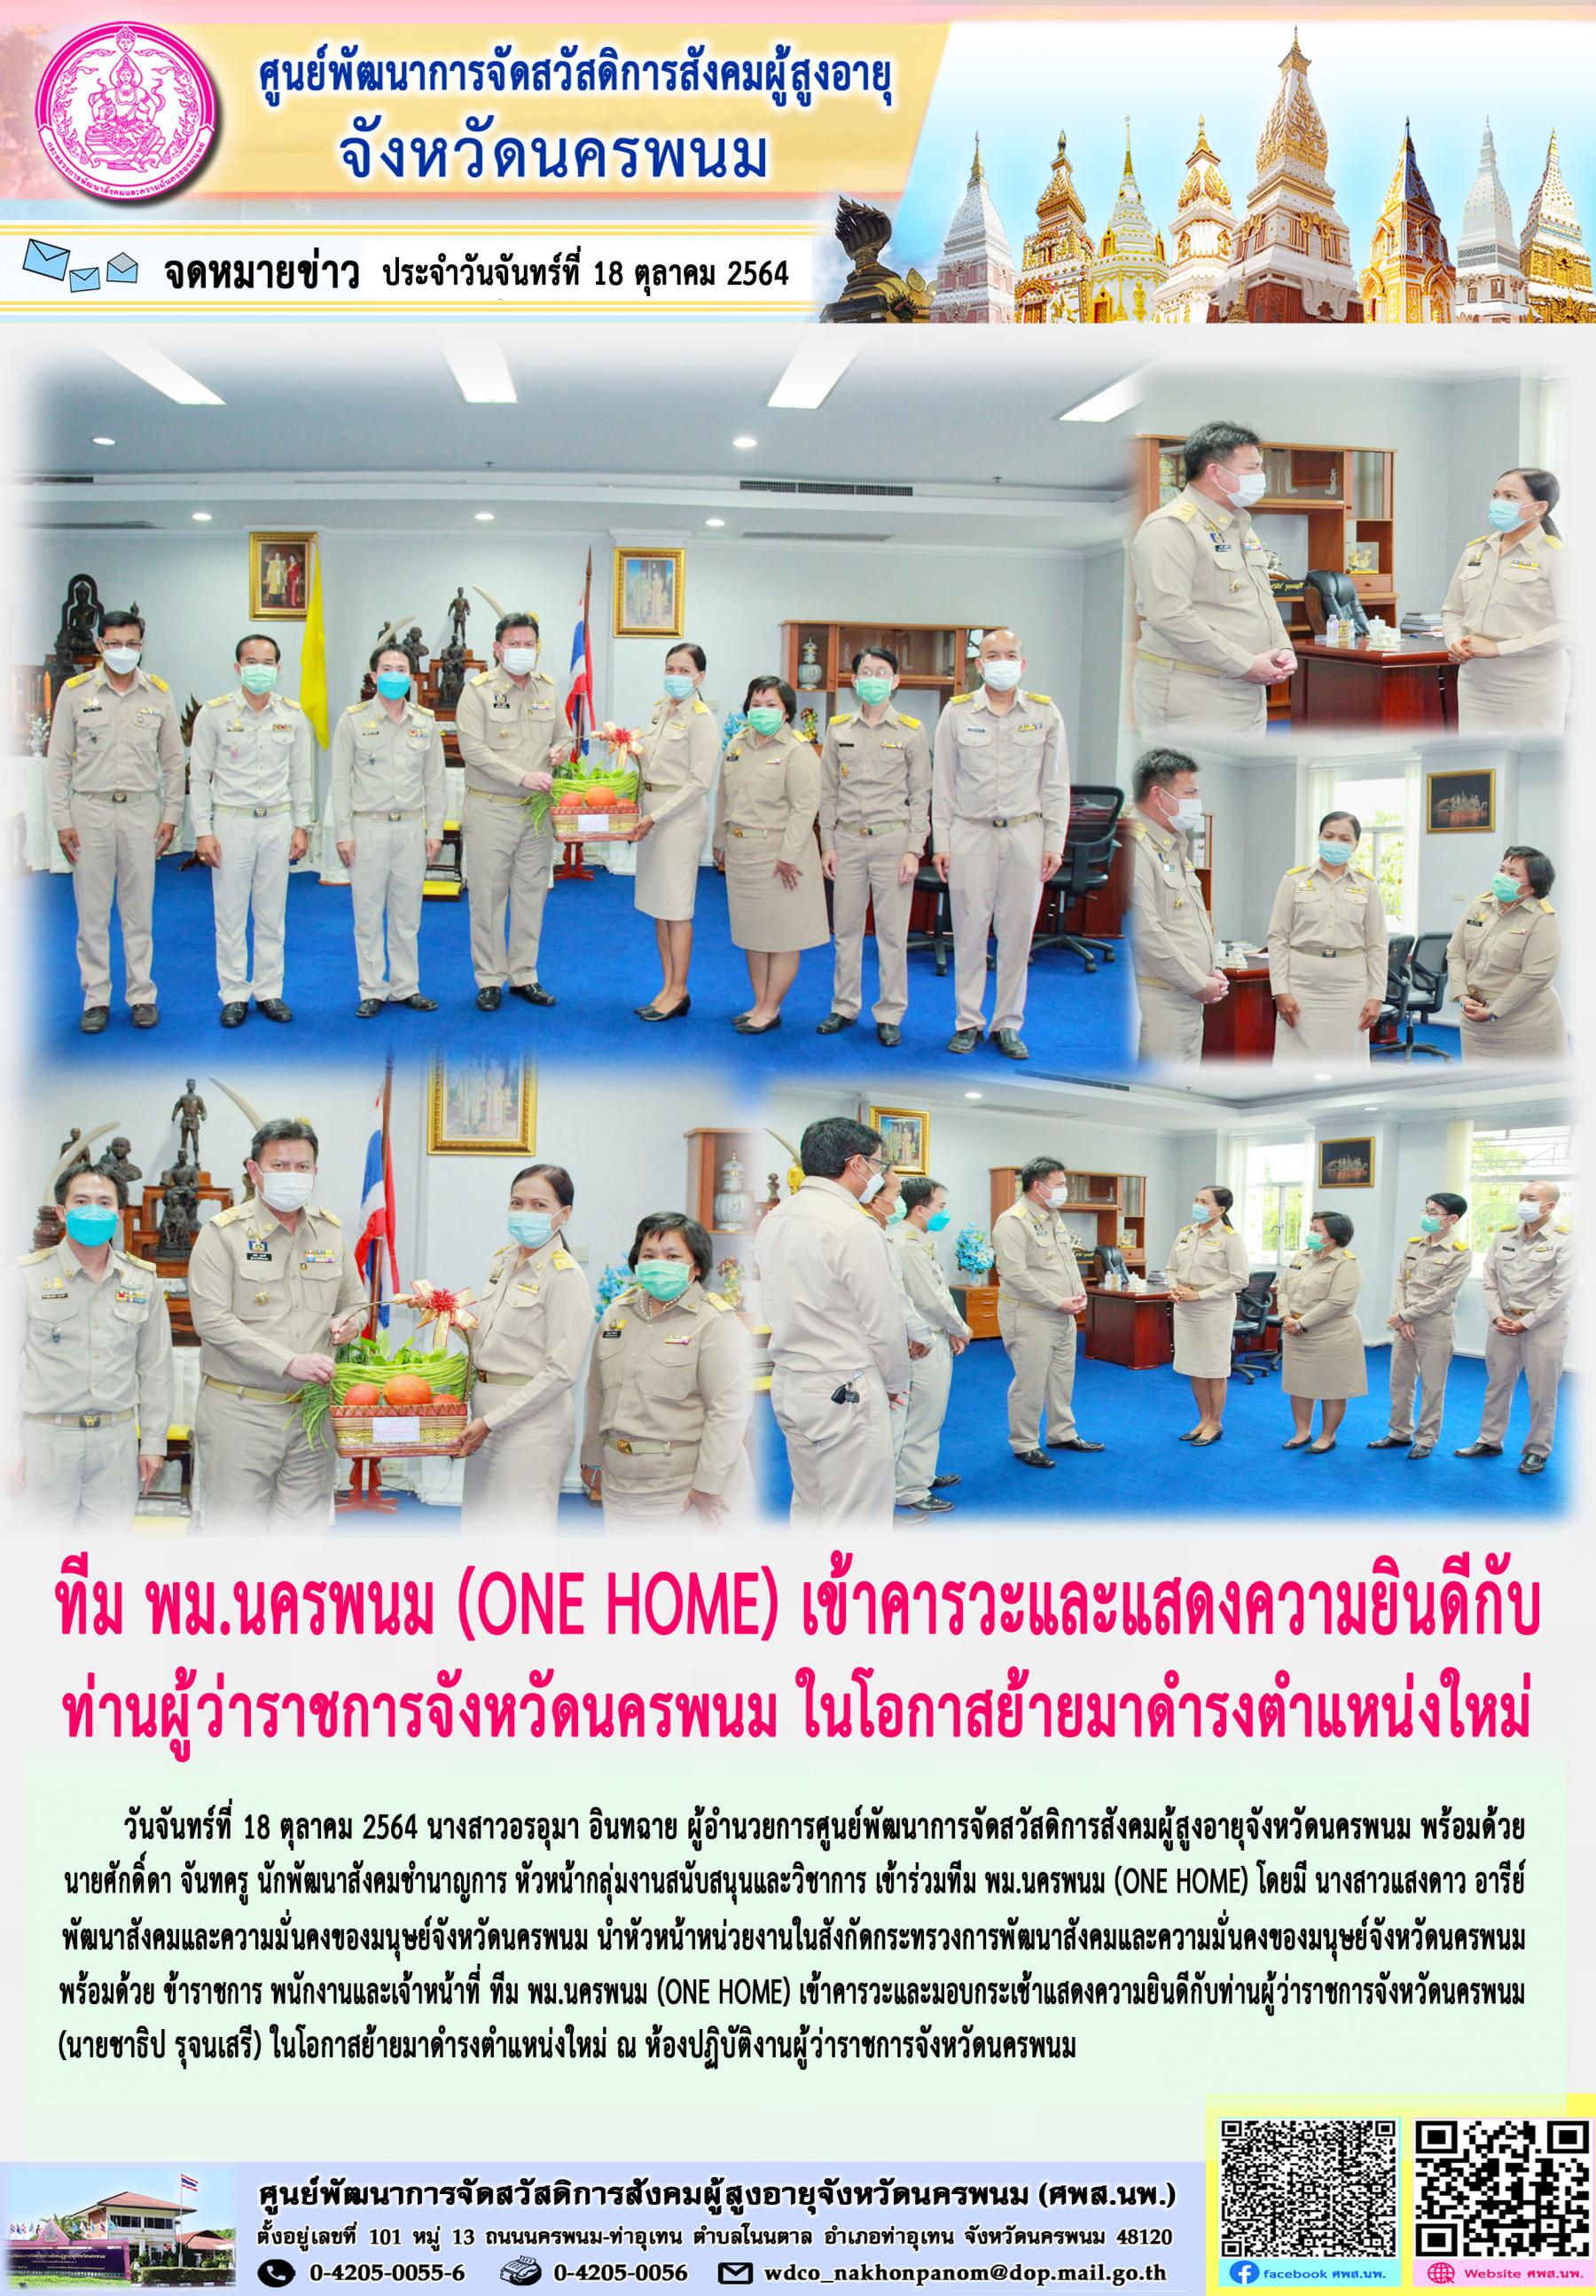 ทีม พม.นครพนม (ONE HOME) เข้าคารวะและแสดงความยินดีกับ ท่านผู้ว่าราชการจังหวัดนครพนม ในโอกาสย้ายมาดำรงตำแหน่งใหม่